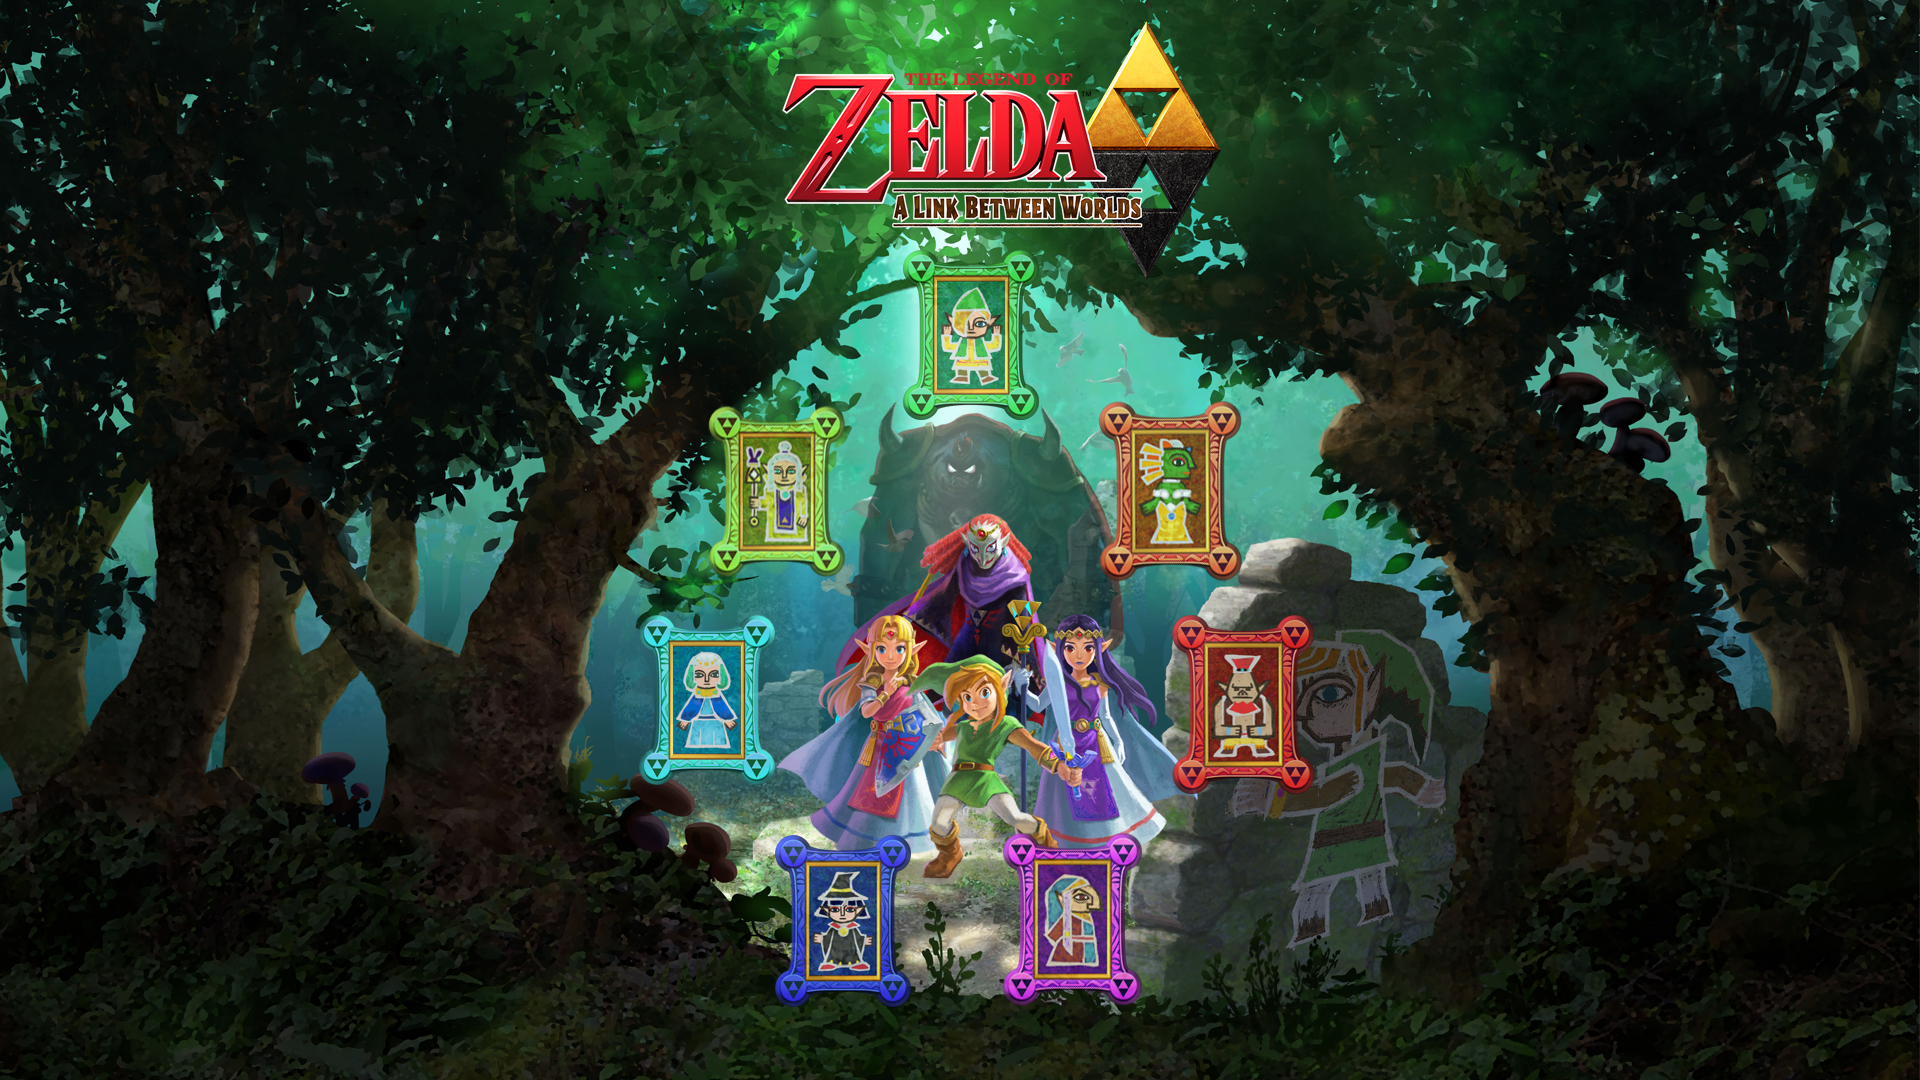 Zelda A Link Between Worlds by zupertompa on DeviantArt